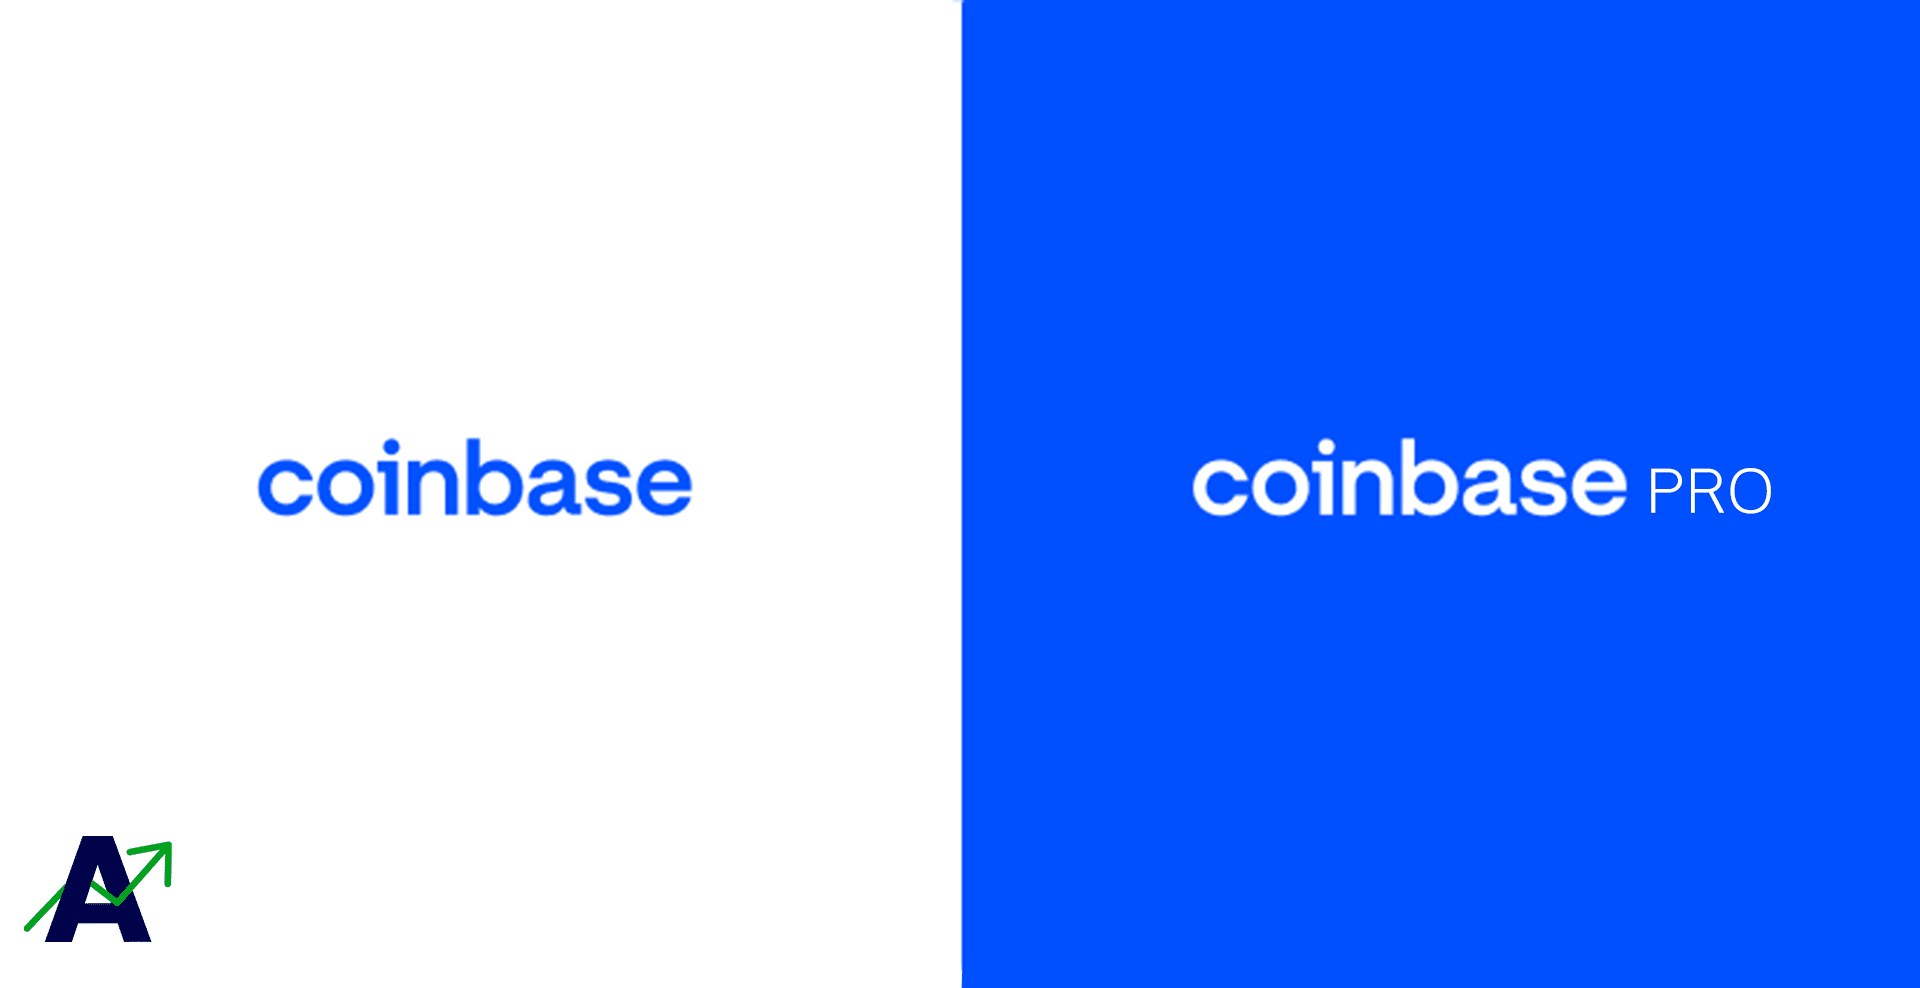 Coinbase vs Coinbase Pro